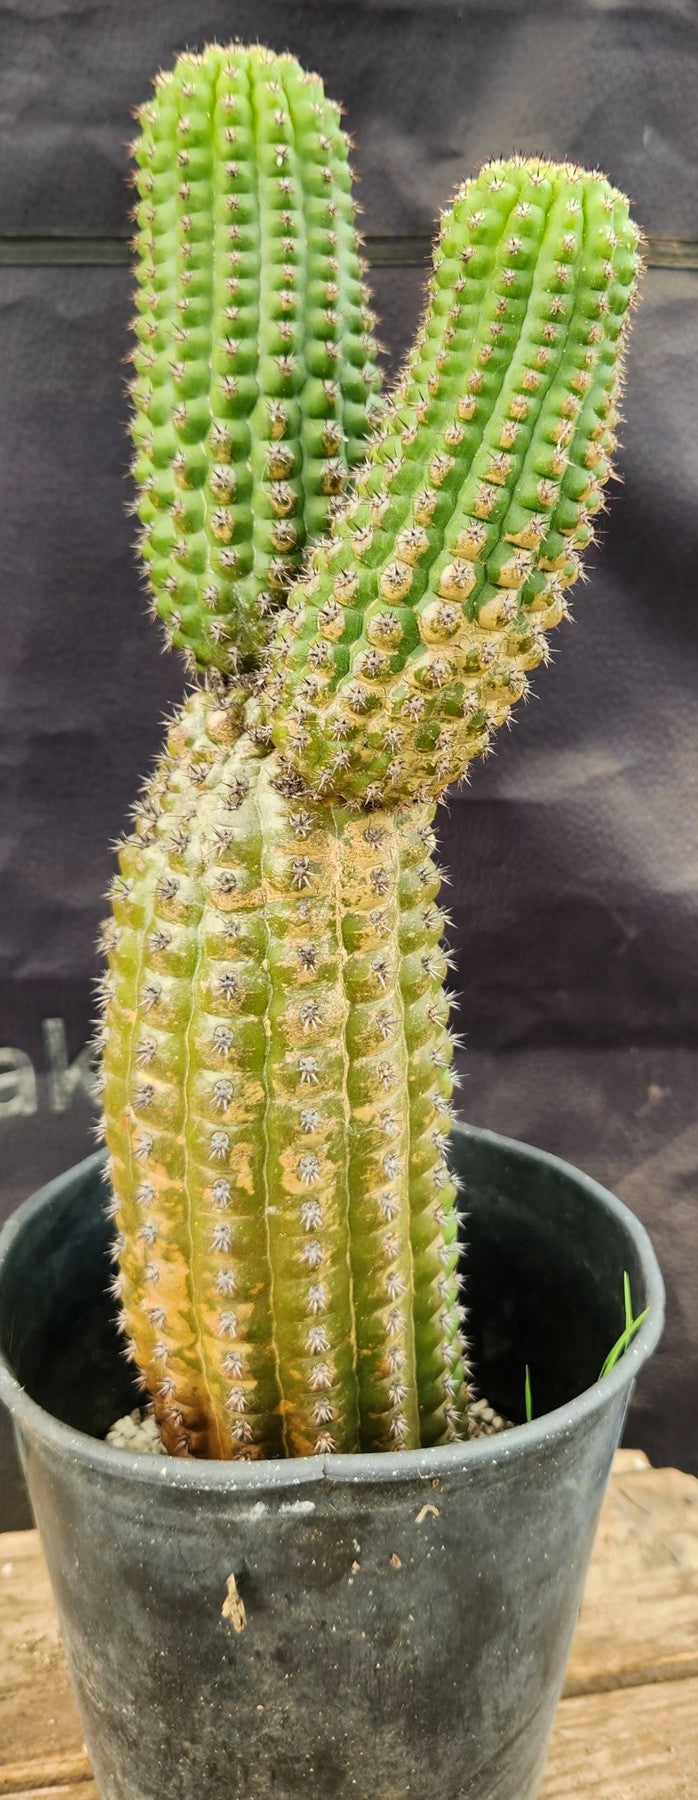 #EC270 EXACT Trichocereus Brevispinulosus Indian Comb Cactus 13.5”-Cactus - Large - Exact-The Succulent Source